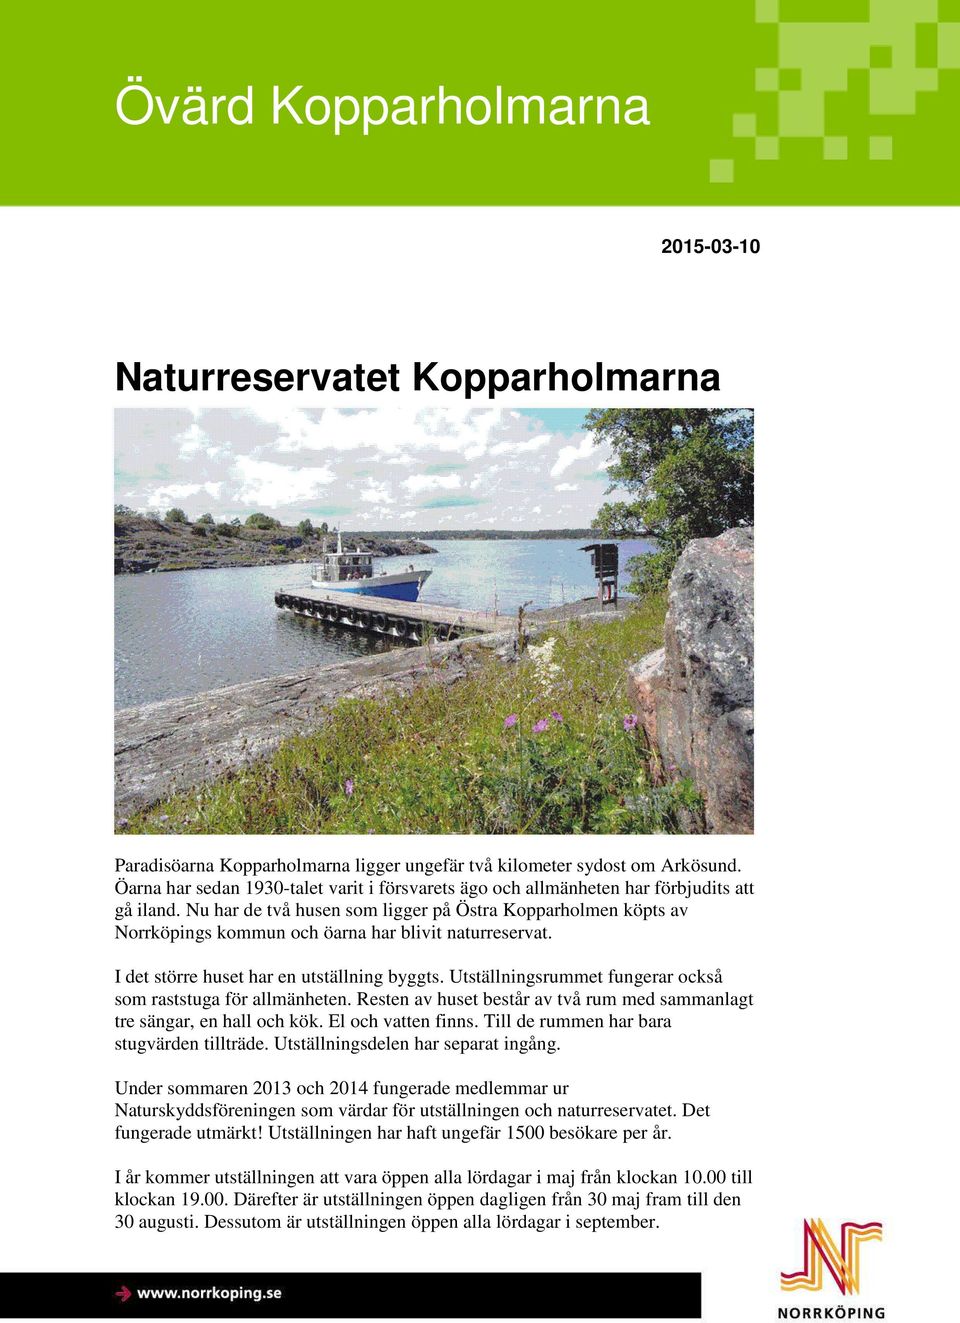 Nu har de två husen som ligger på Östra Kopparholmen köpts av Norrköpings kommun och öarna har blivit naturreservat. I det större huset har en utställning byggts.